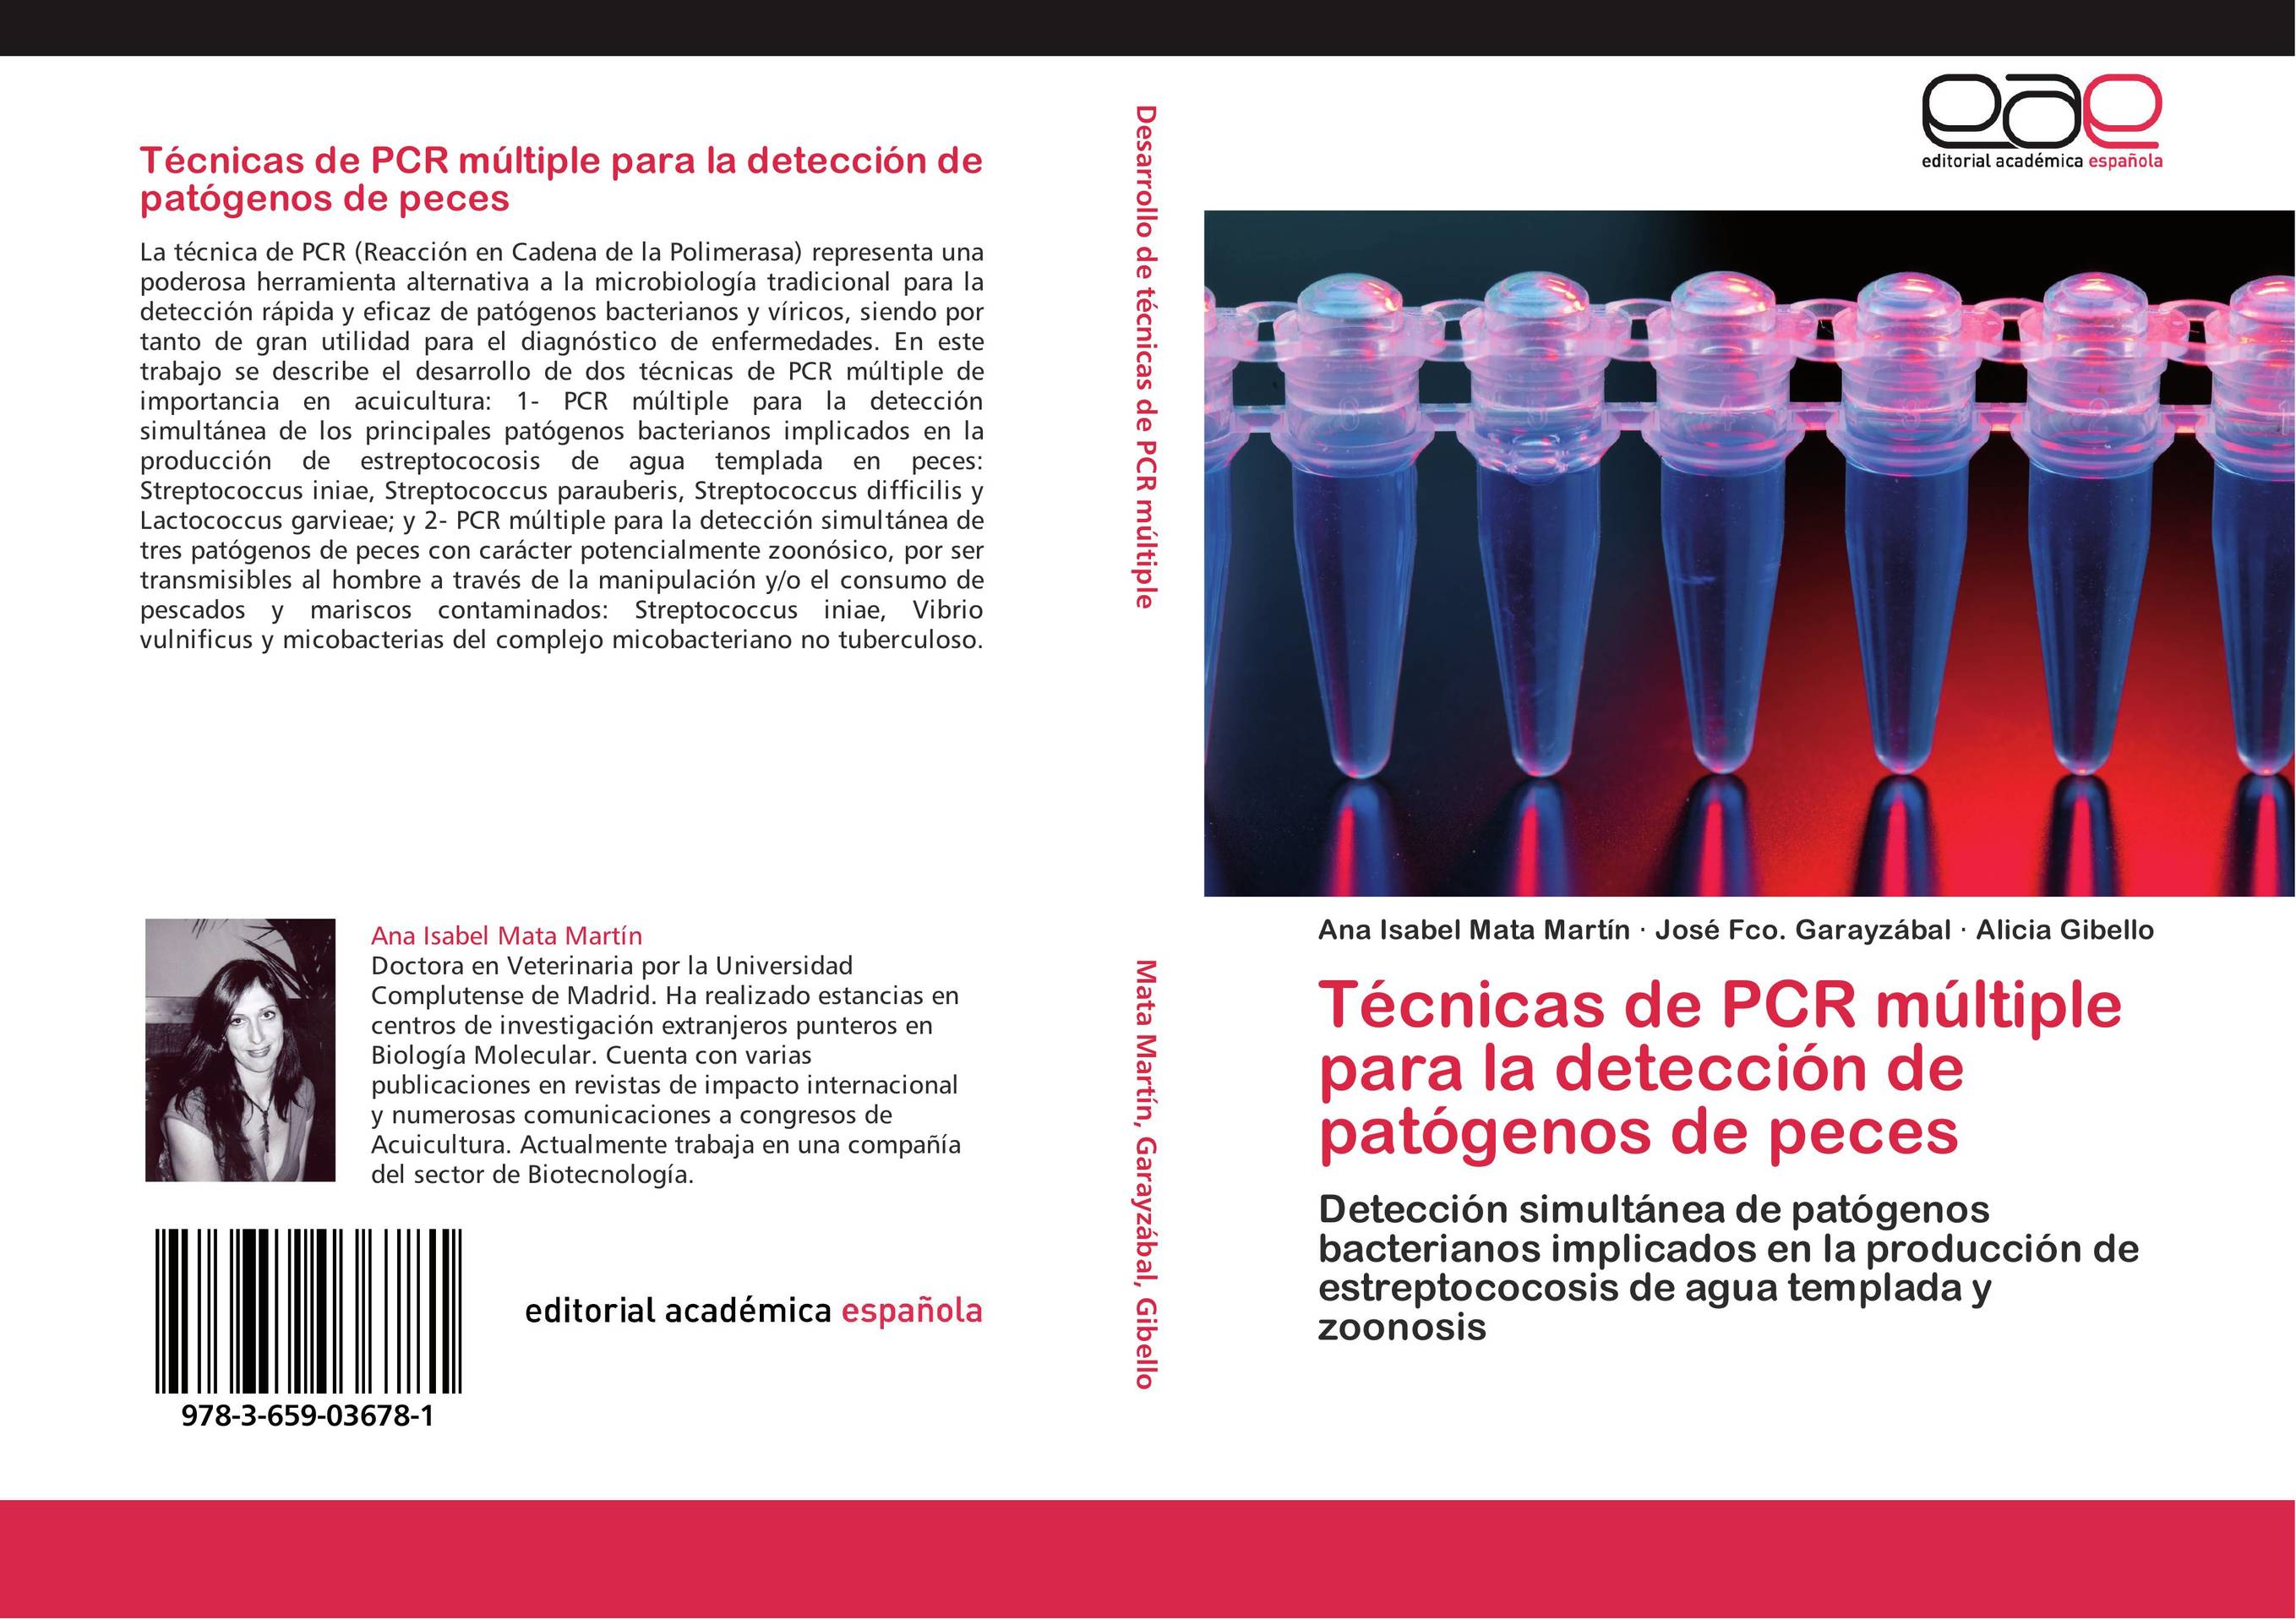 Técnicas de PCR múltiple para la detección de patógenos de peces